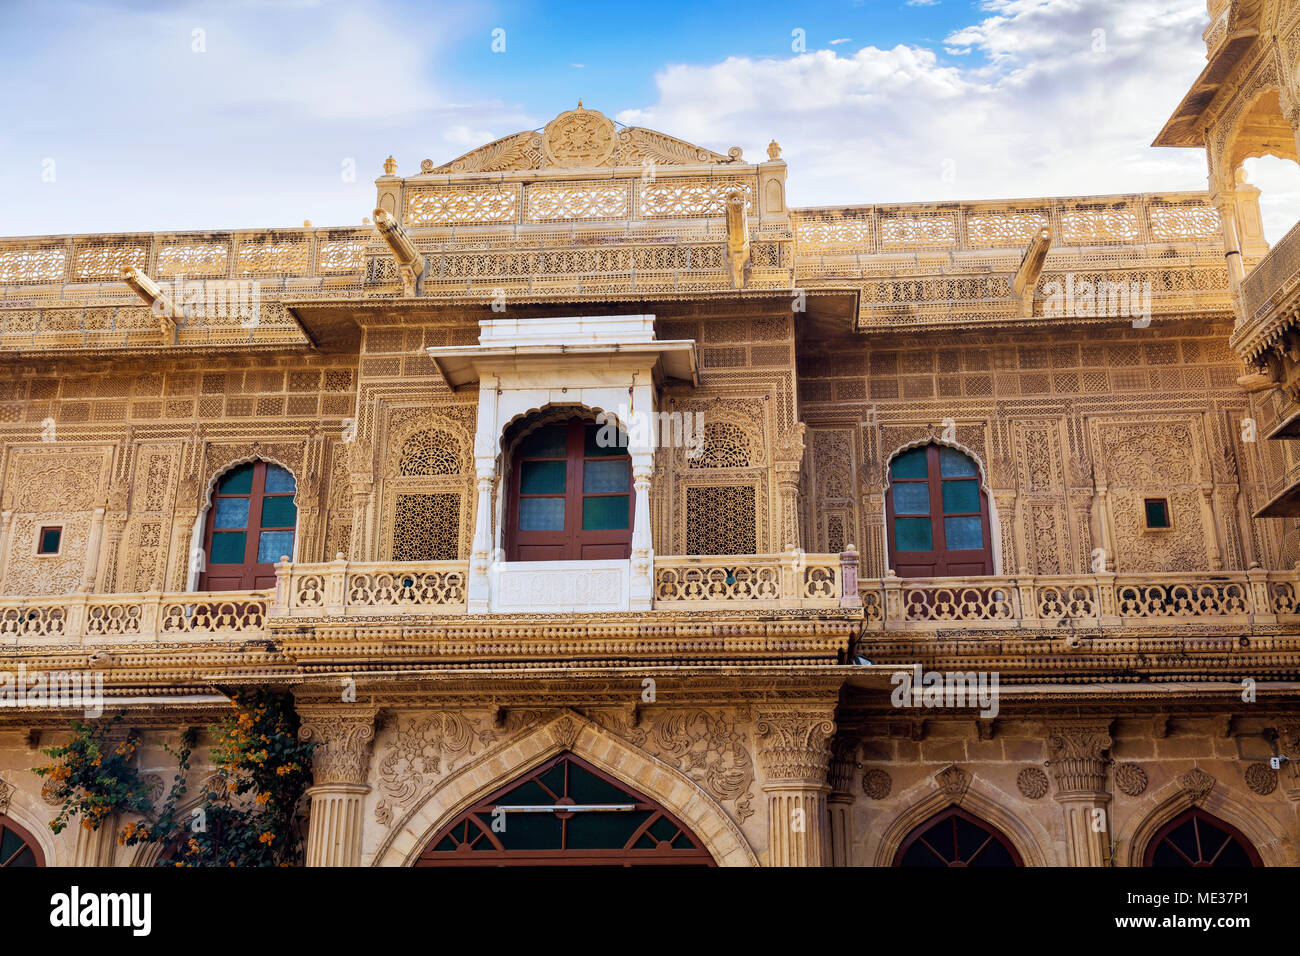 Schöne Rajasthan Architektur Kunst Arbeit von Mandir Palace Jaisalmer - ein königliches Erbe Gebäude und beliebtes Touristenziel. Stockfoto